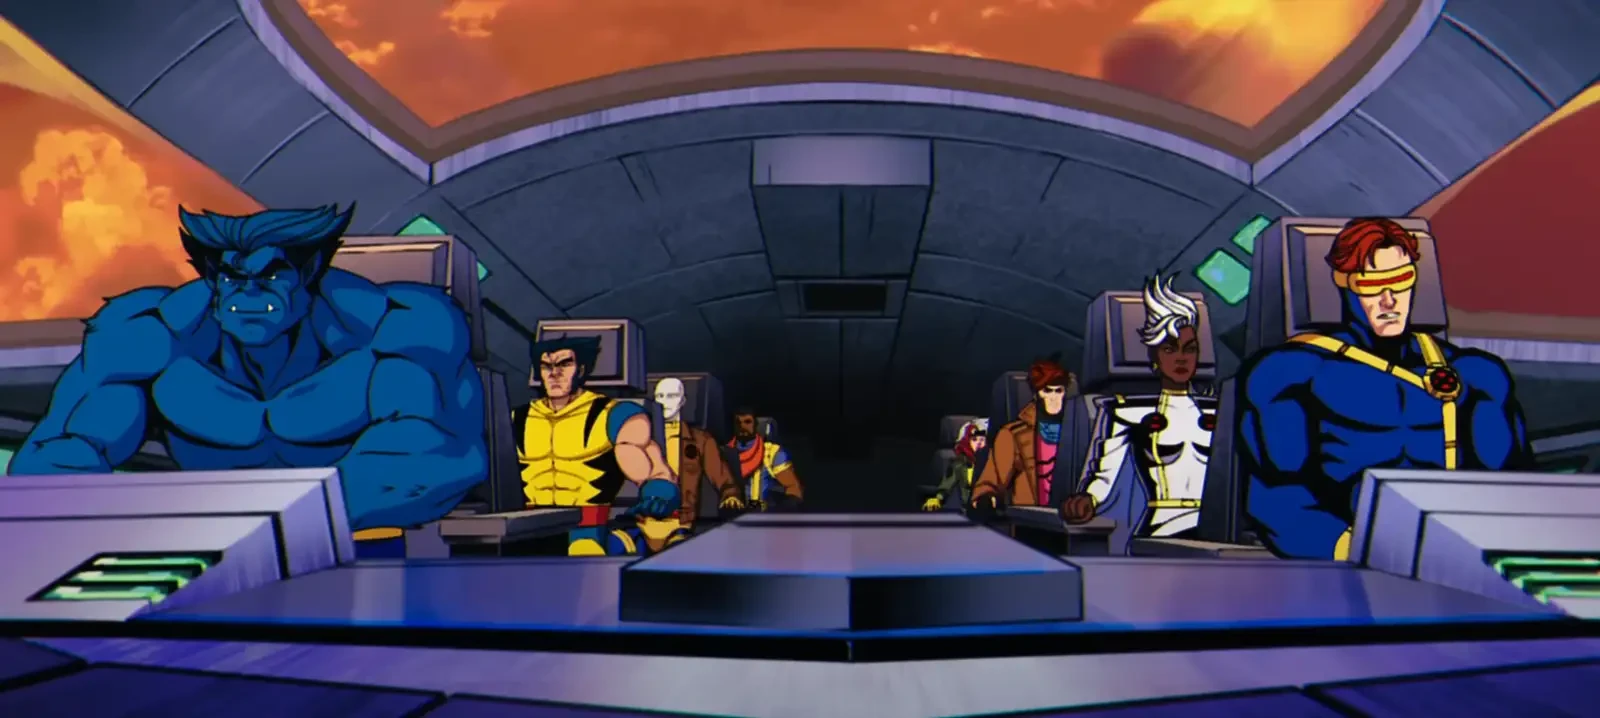 A scene from Marvel's X-Men '97 